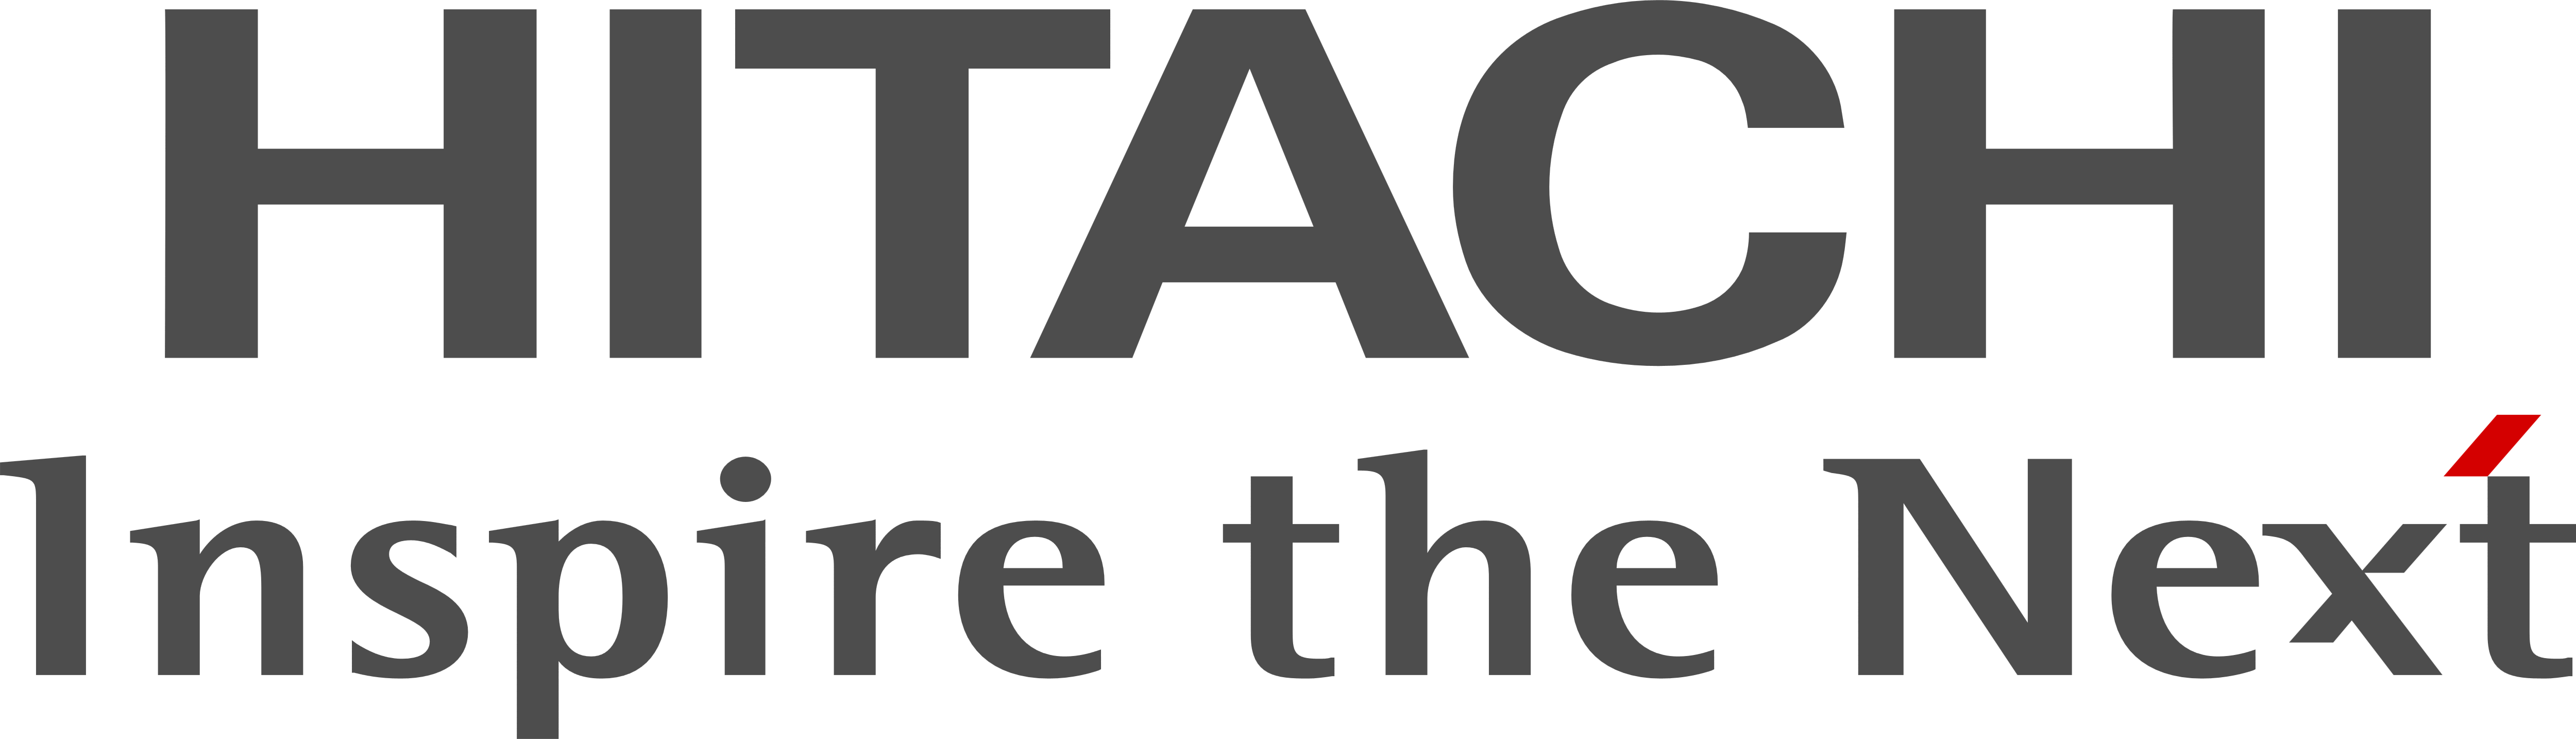 Hitachi Logo Vectors Free Dow